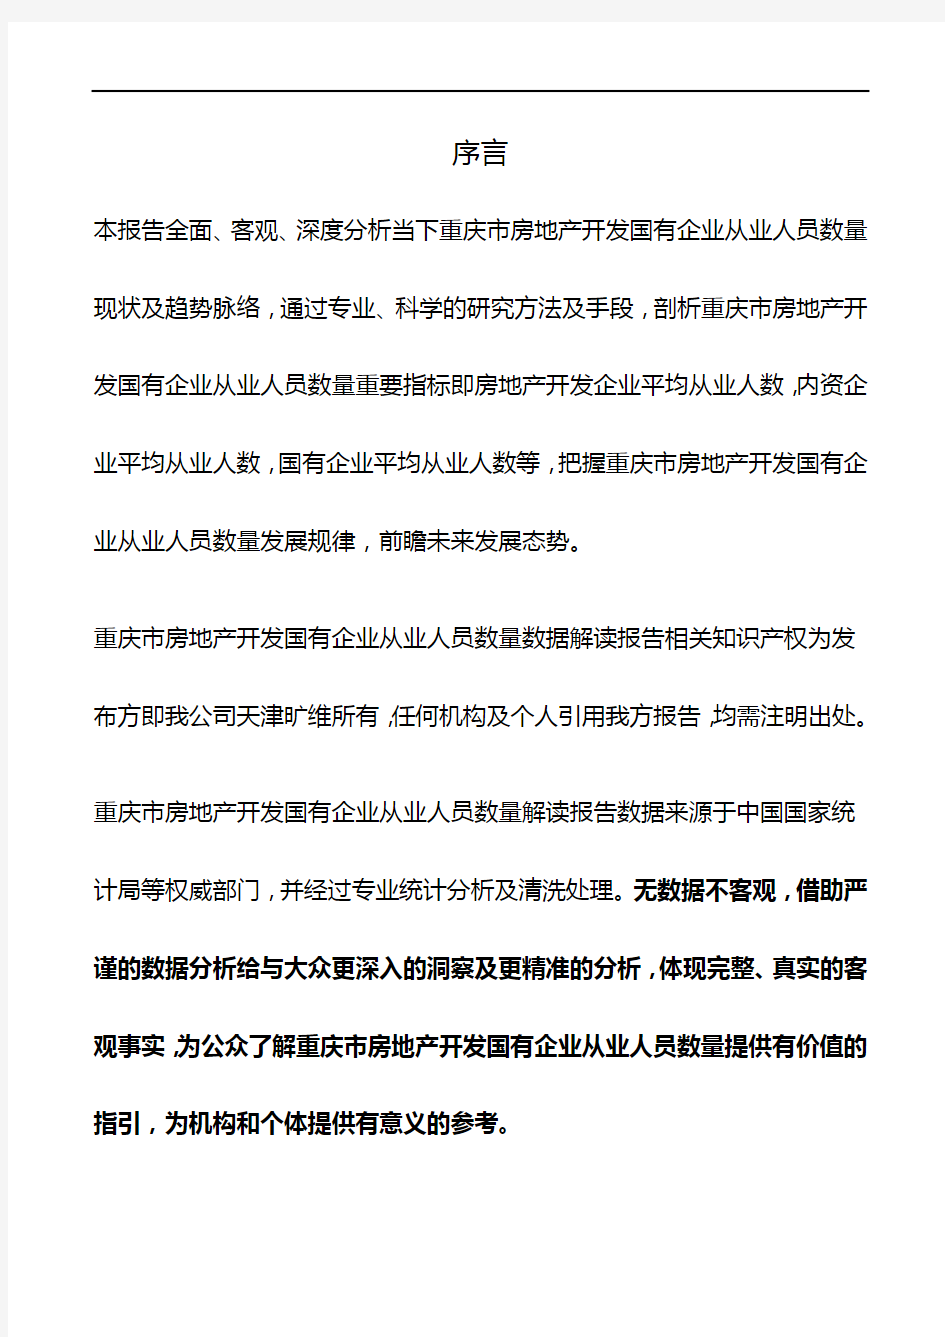 重庆市房地产开发国有企业从业人员数量数据解读报告2019版